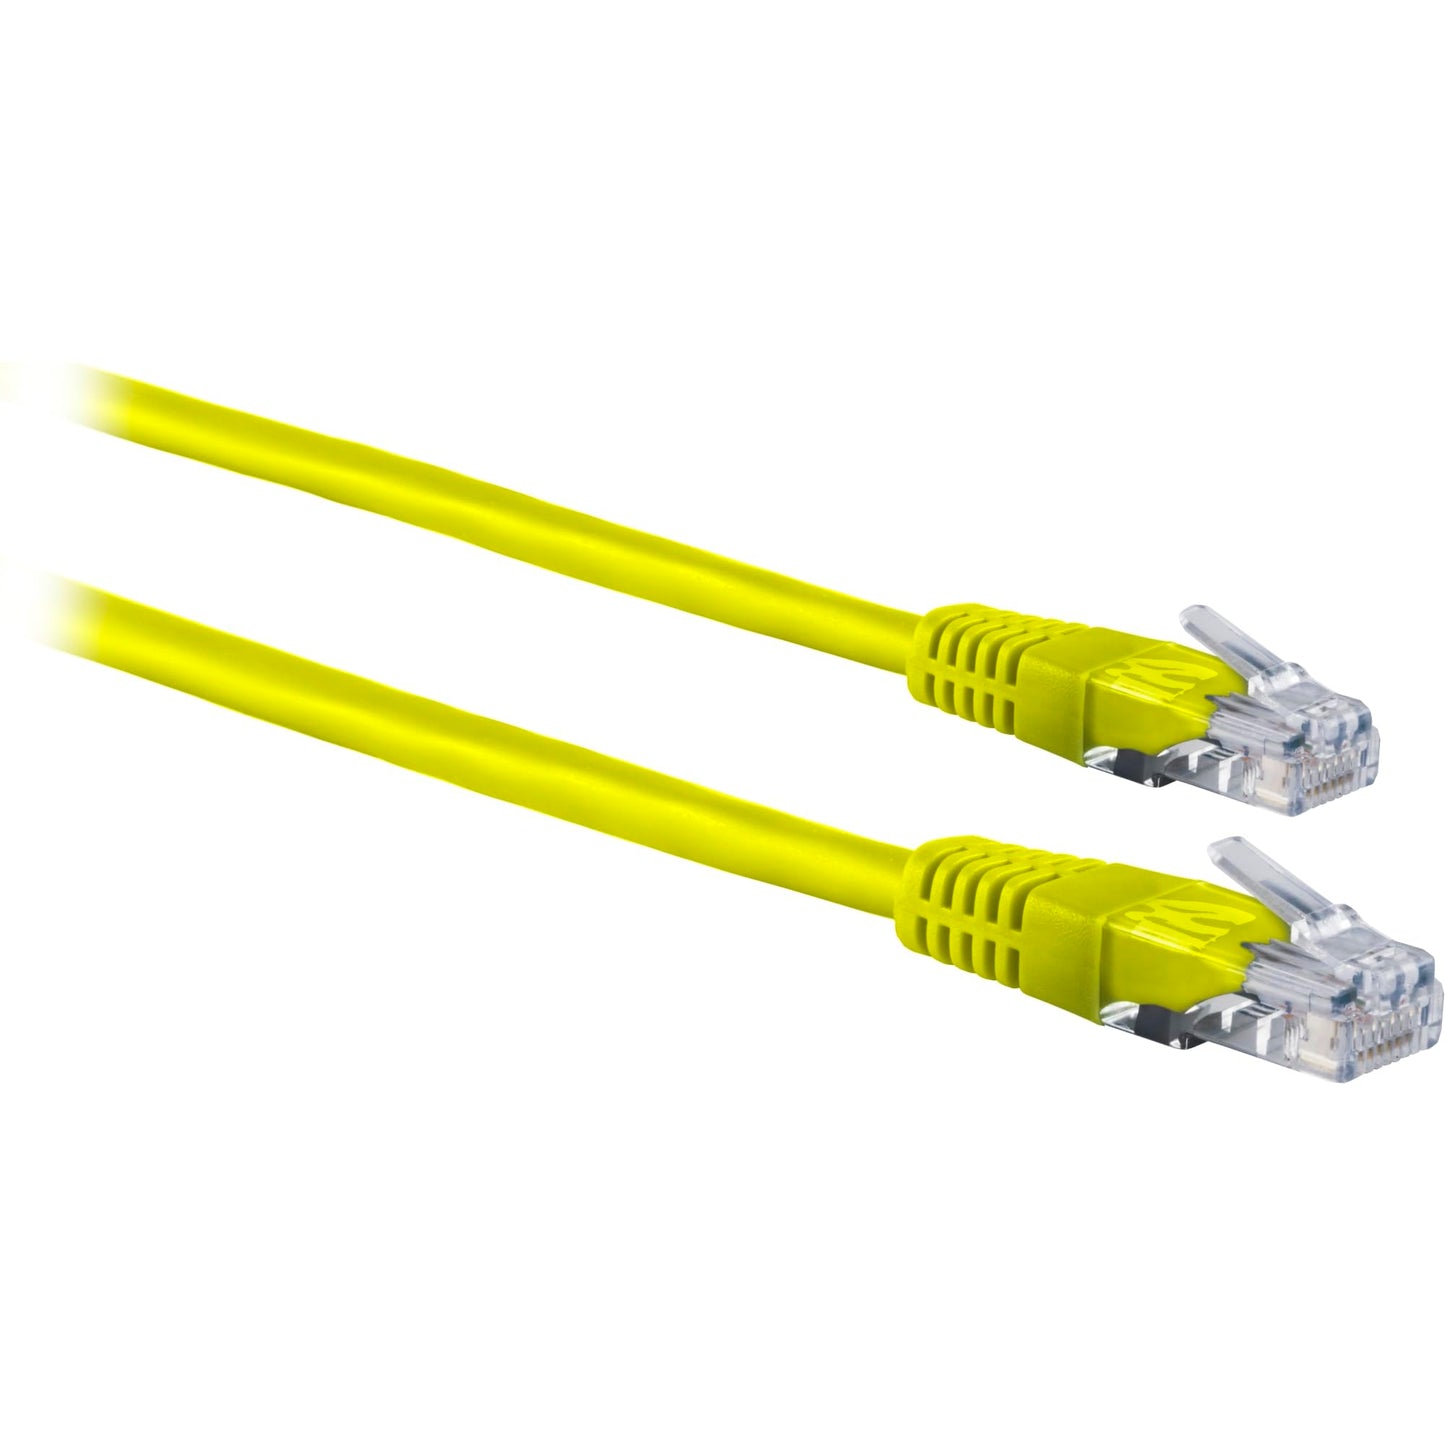 Ativa® Cat 5e Crossover Cable, 10’, Yellow, 26879